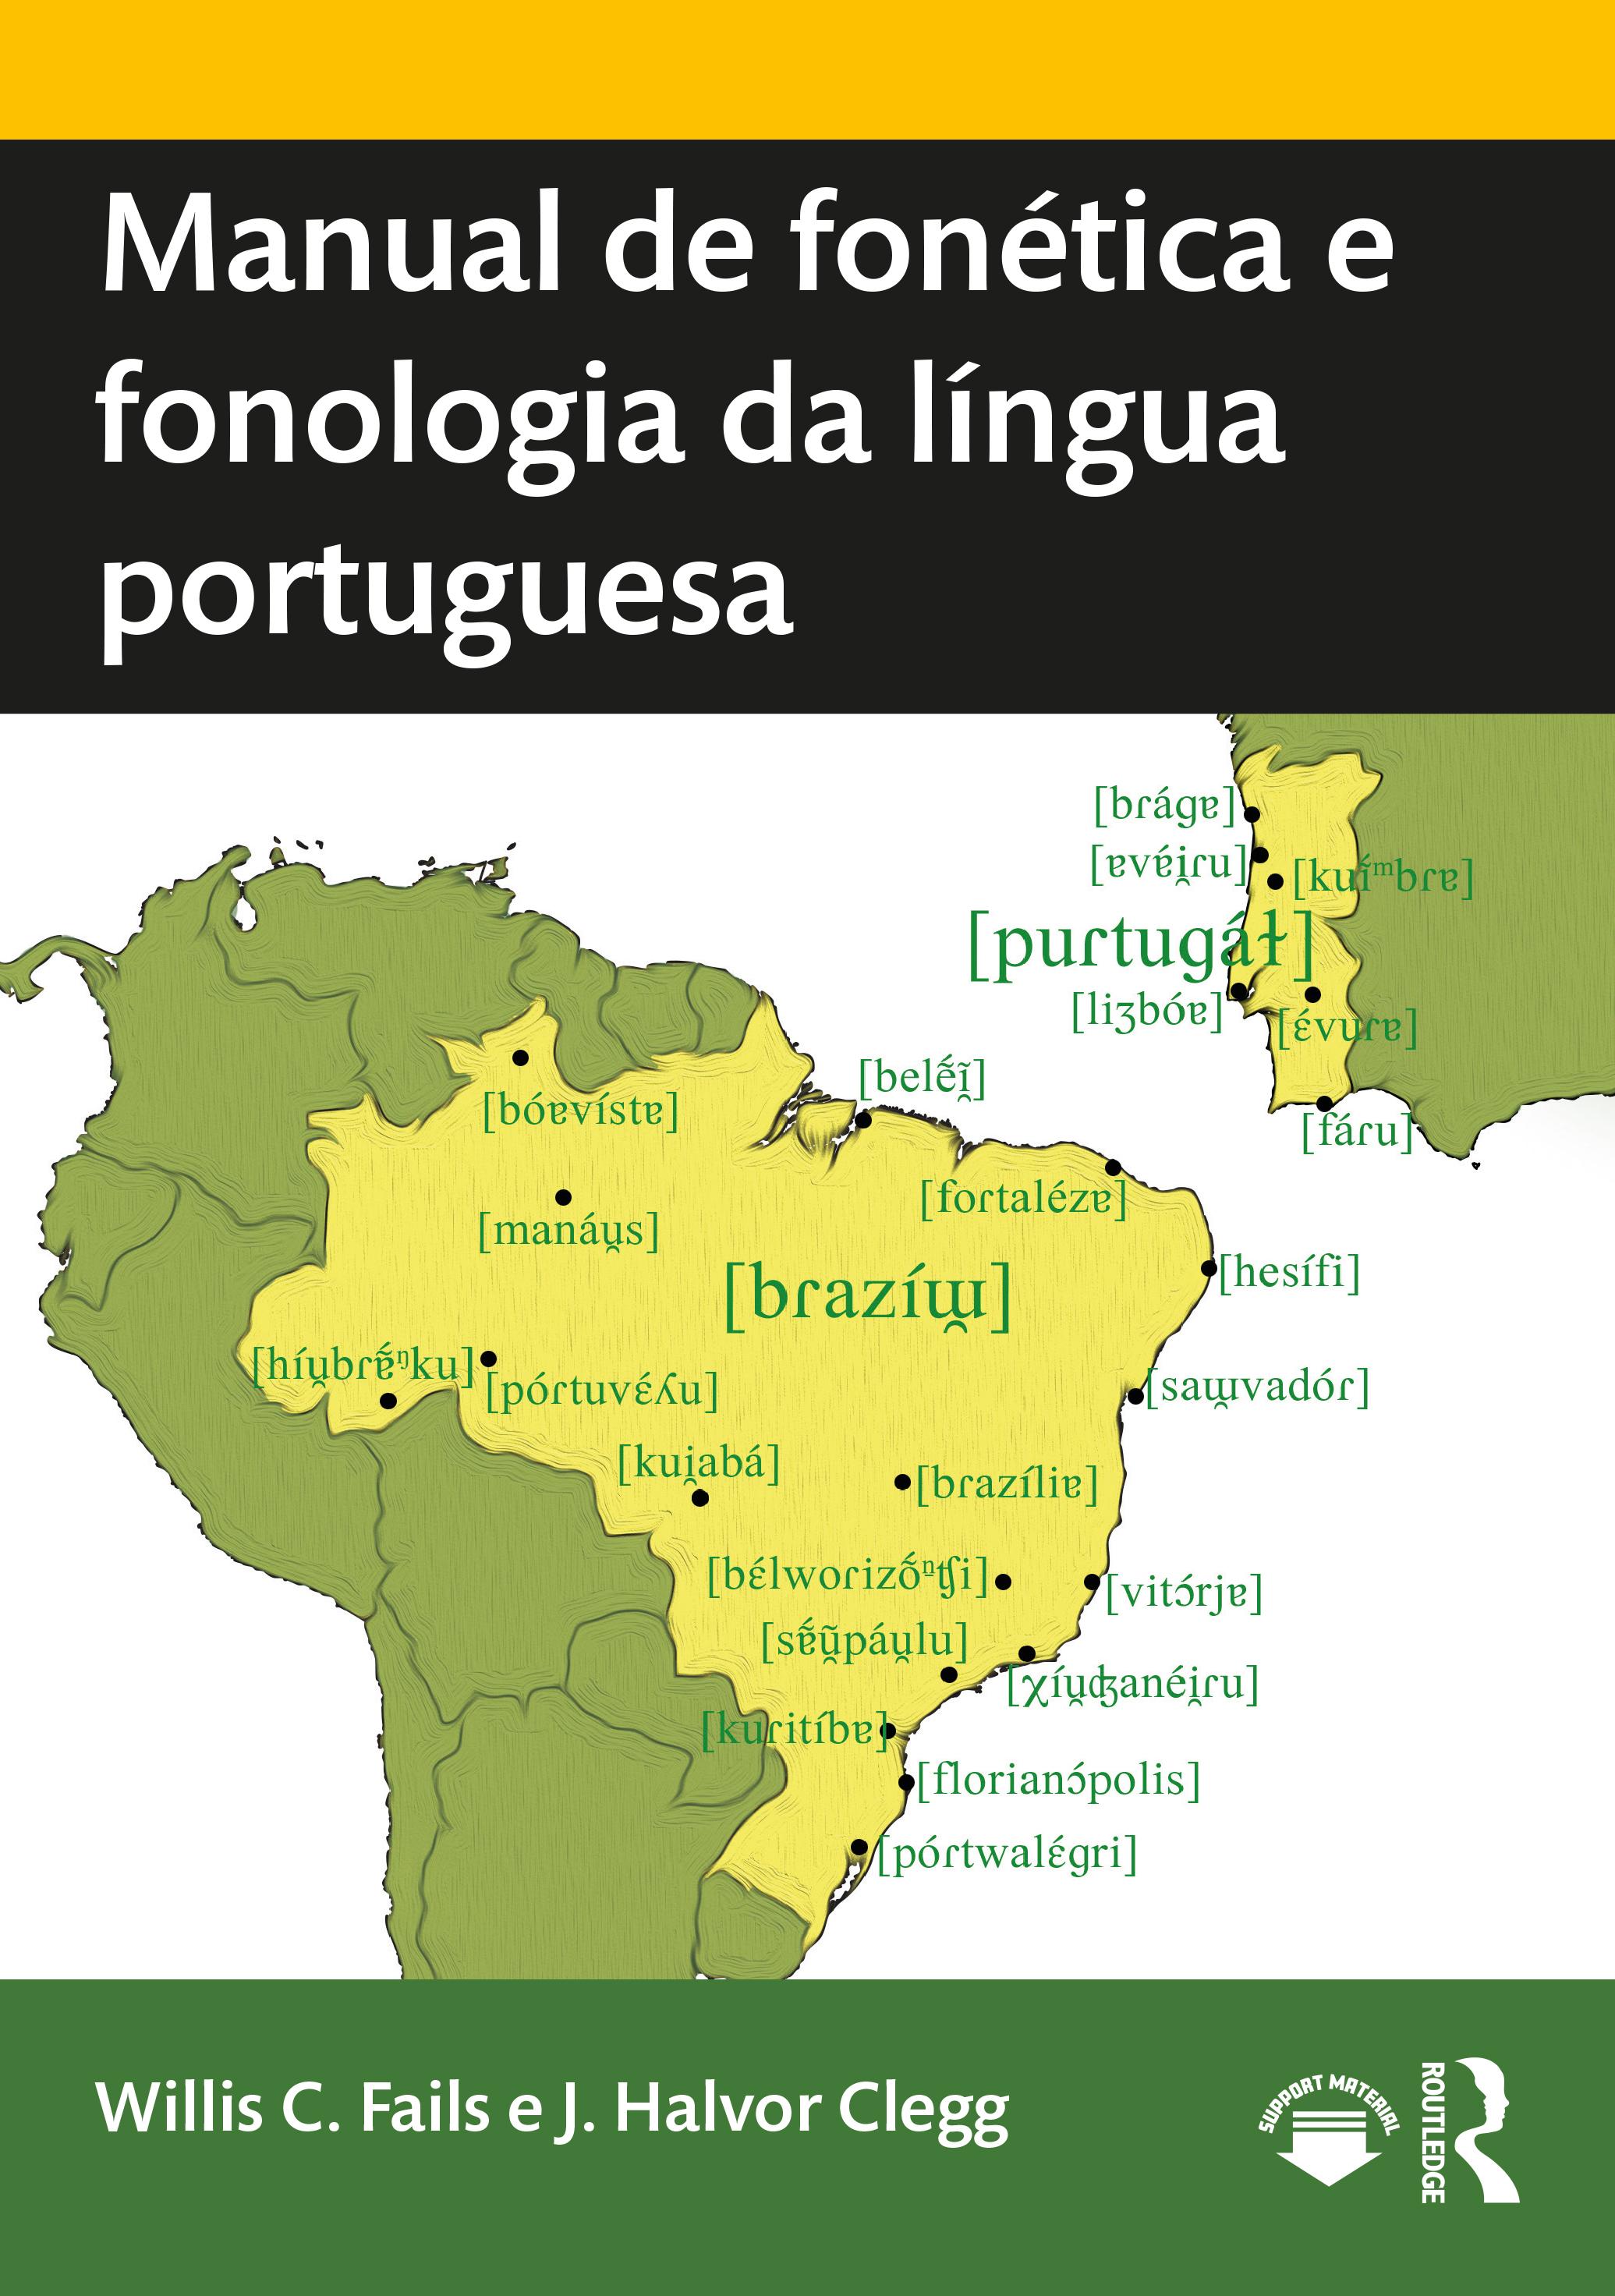 Manual de fonetica e fonologia da lingua portuguesa - Willis C. Fails (Brigham Young University, USA)|J. Halvor Clegg (Brigham Young University, USA)